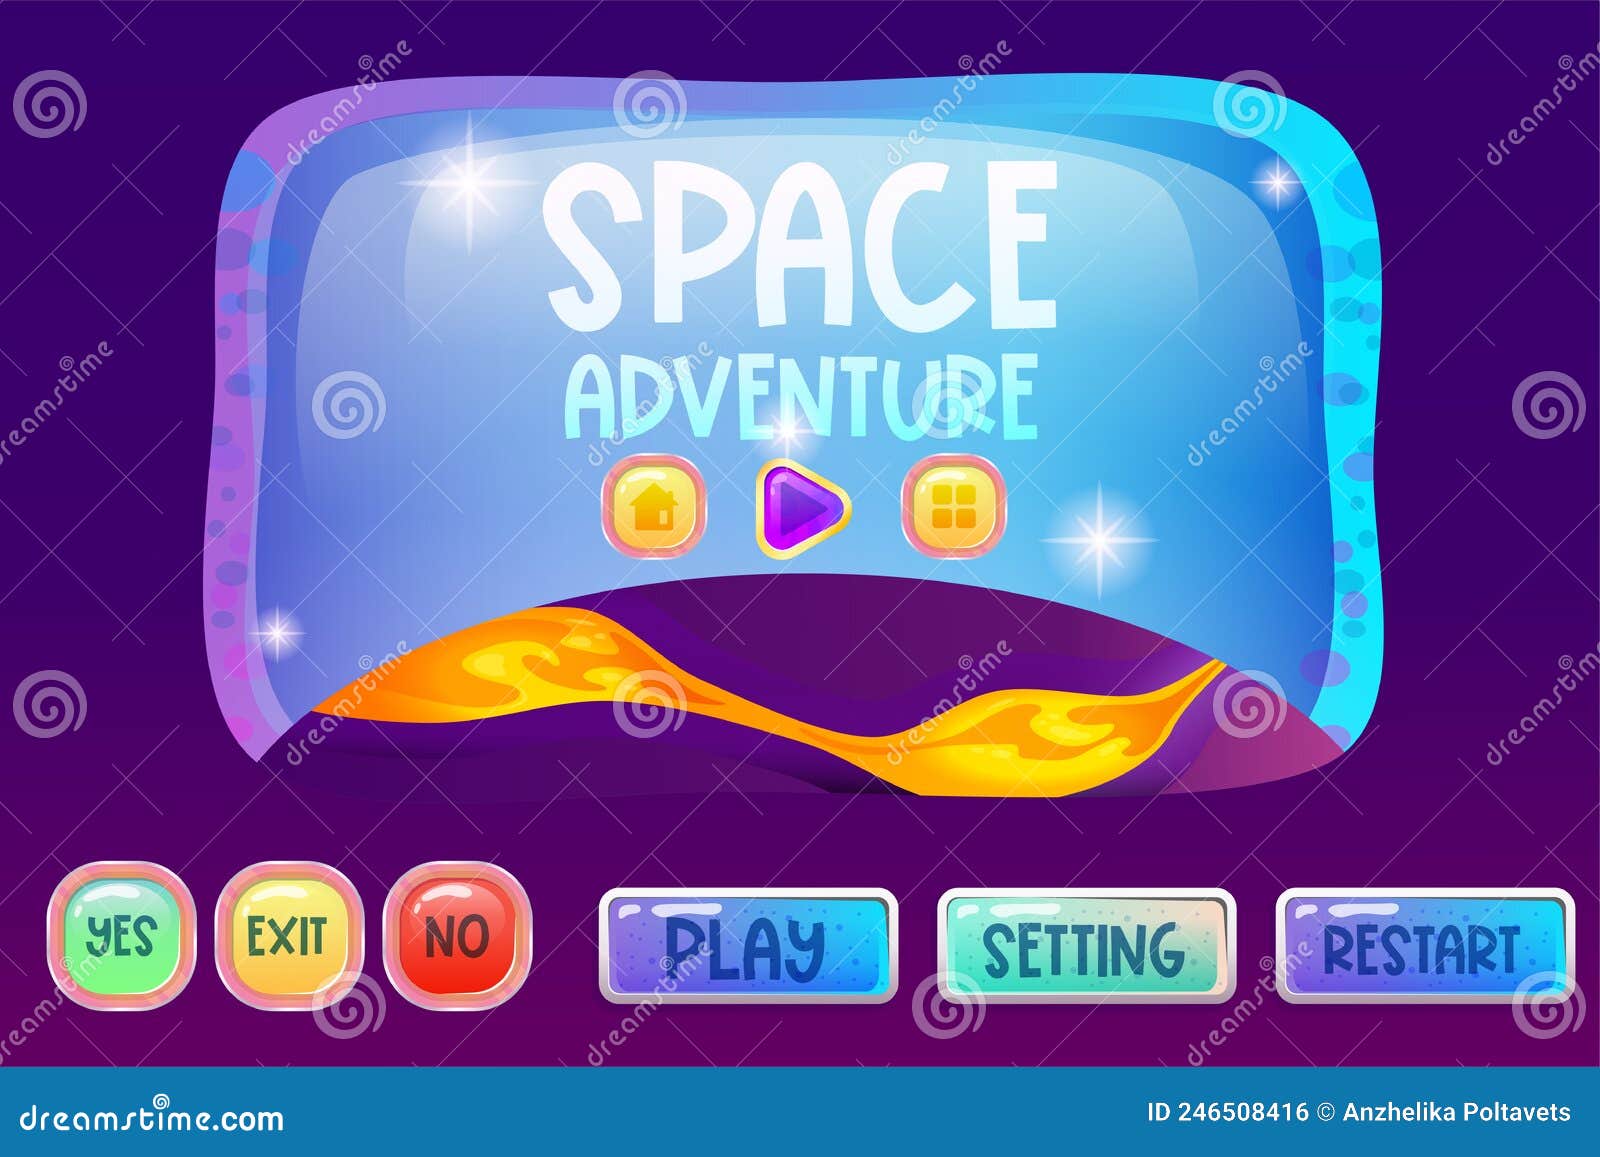 Botões de interface definidos para aplicativos ou jogos espaciais